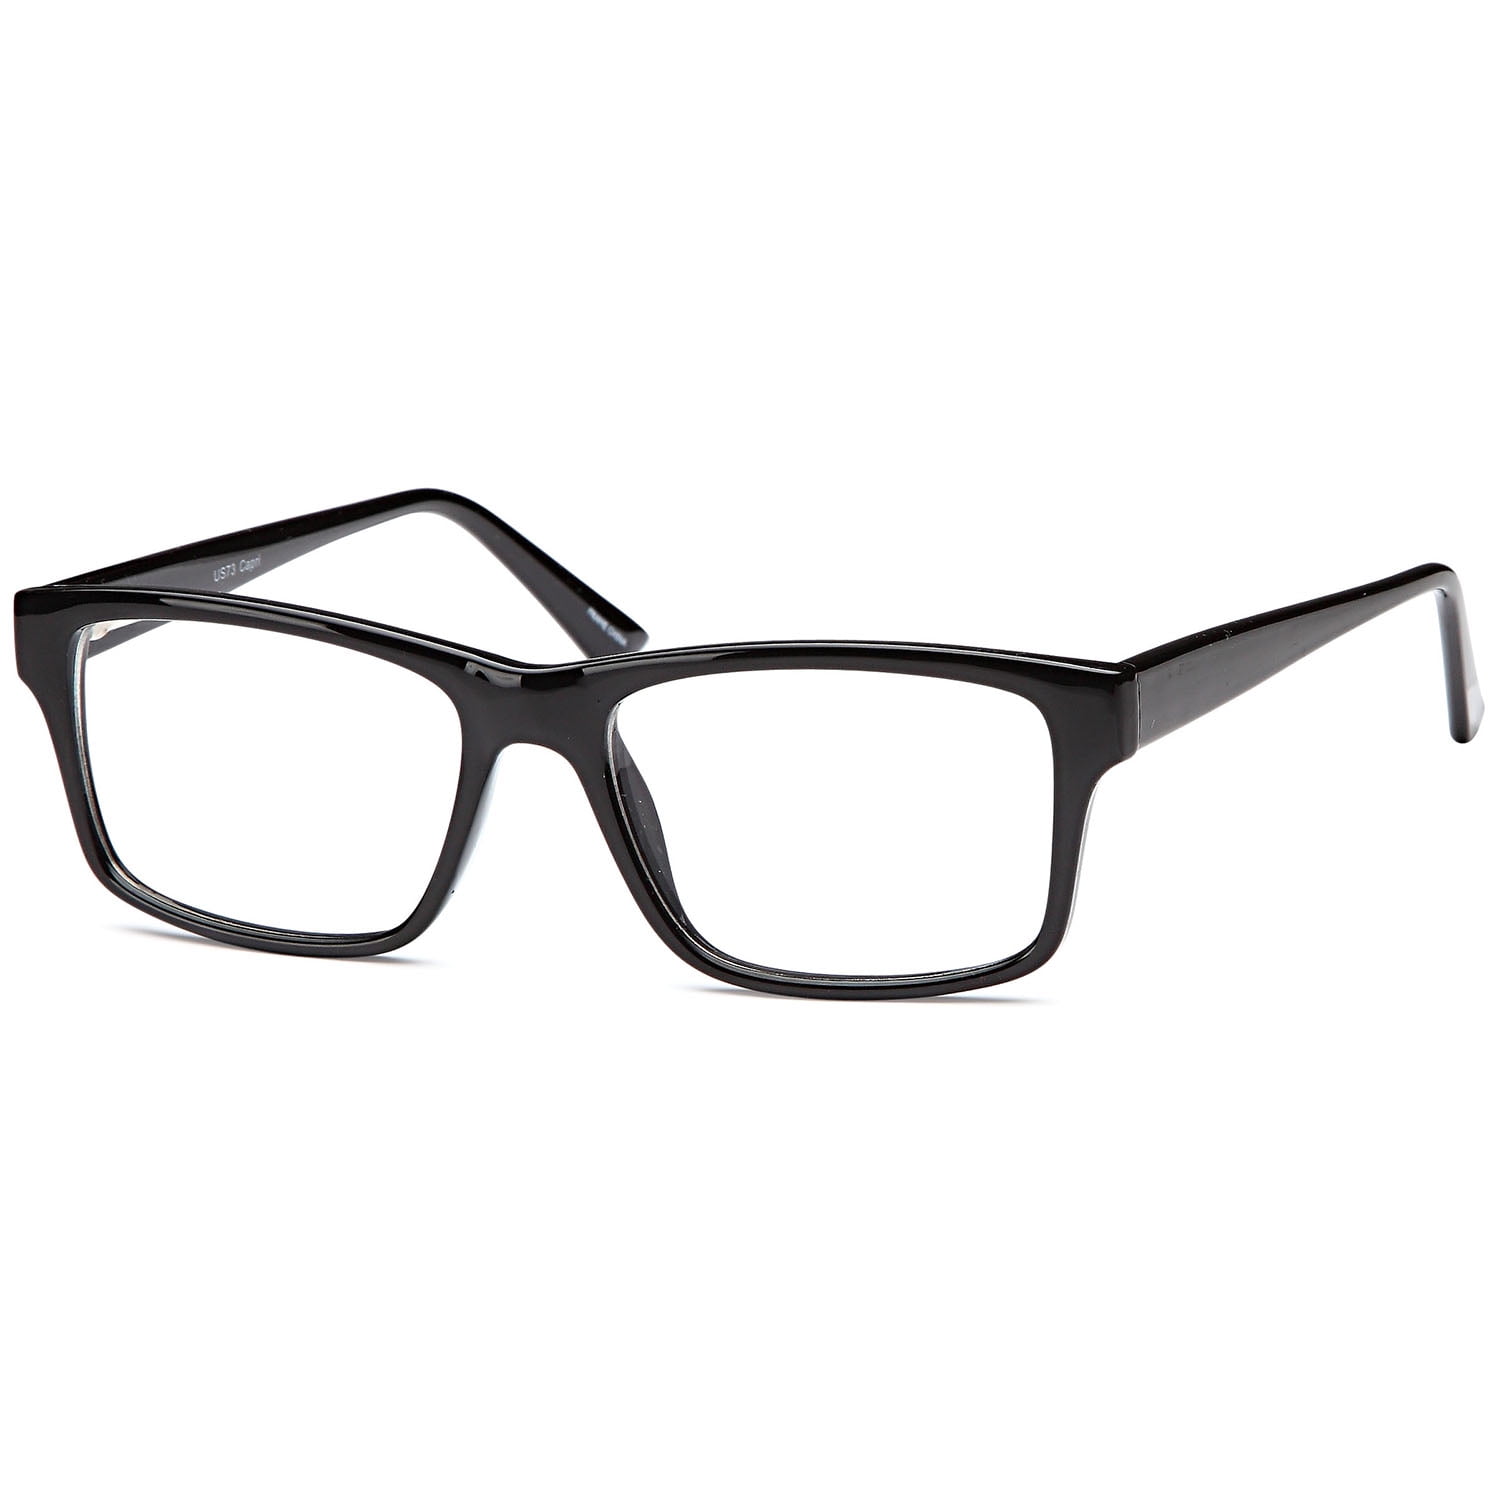 Men S Eyeglasses 53 18 145 Black Plastic